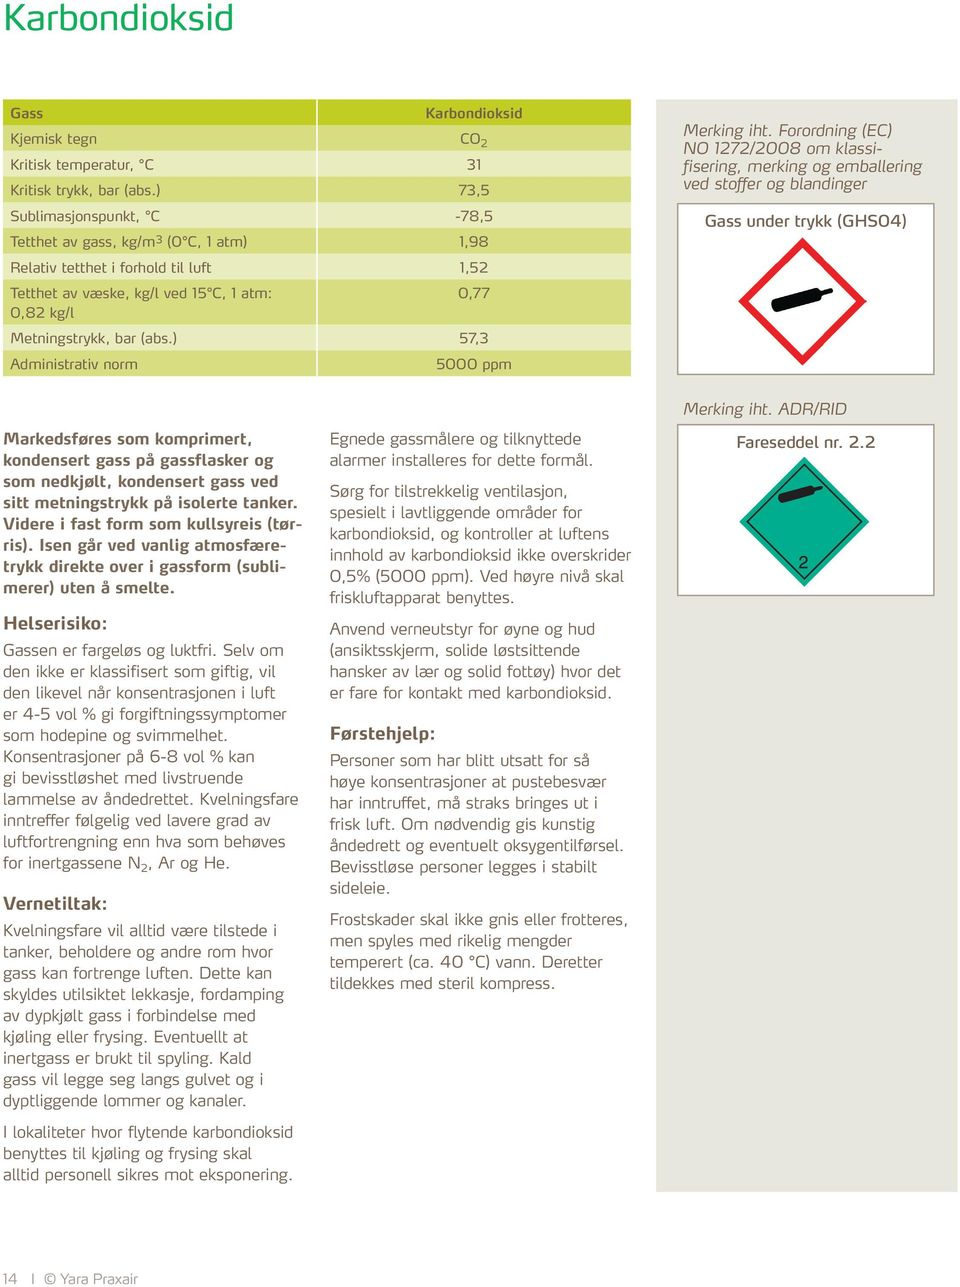 Forordning (EC) NO 1272/2008 om klassifisering, merking og emballering ved stoffer og blandinger Oksiderende (GHS03) Markedsføres som komprimert, konden sert gass ved sitt metningstrykk.